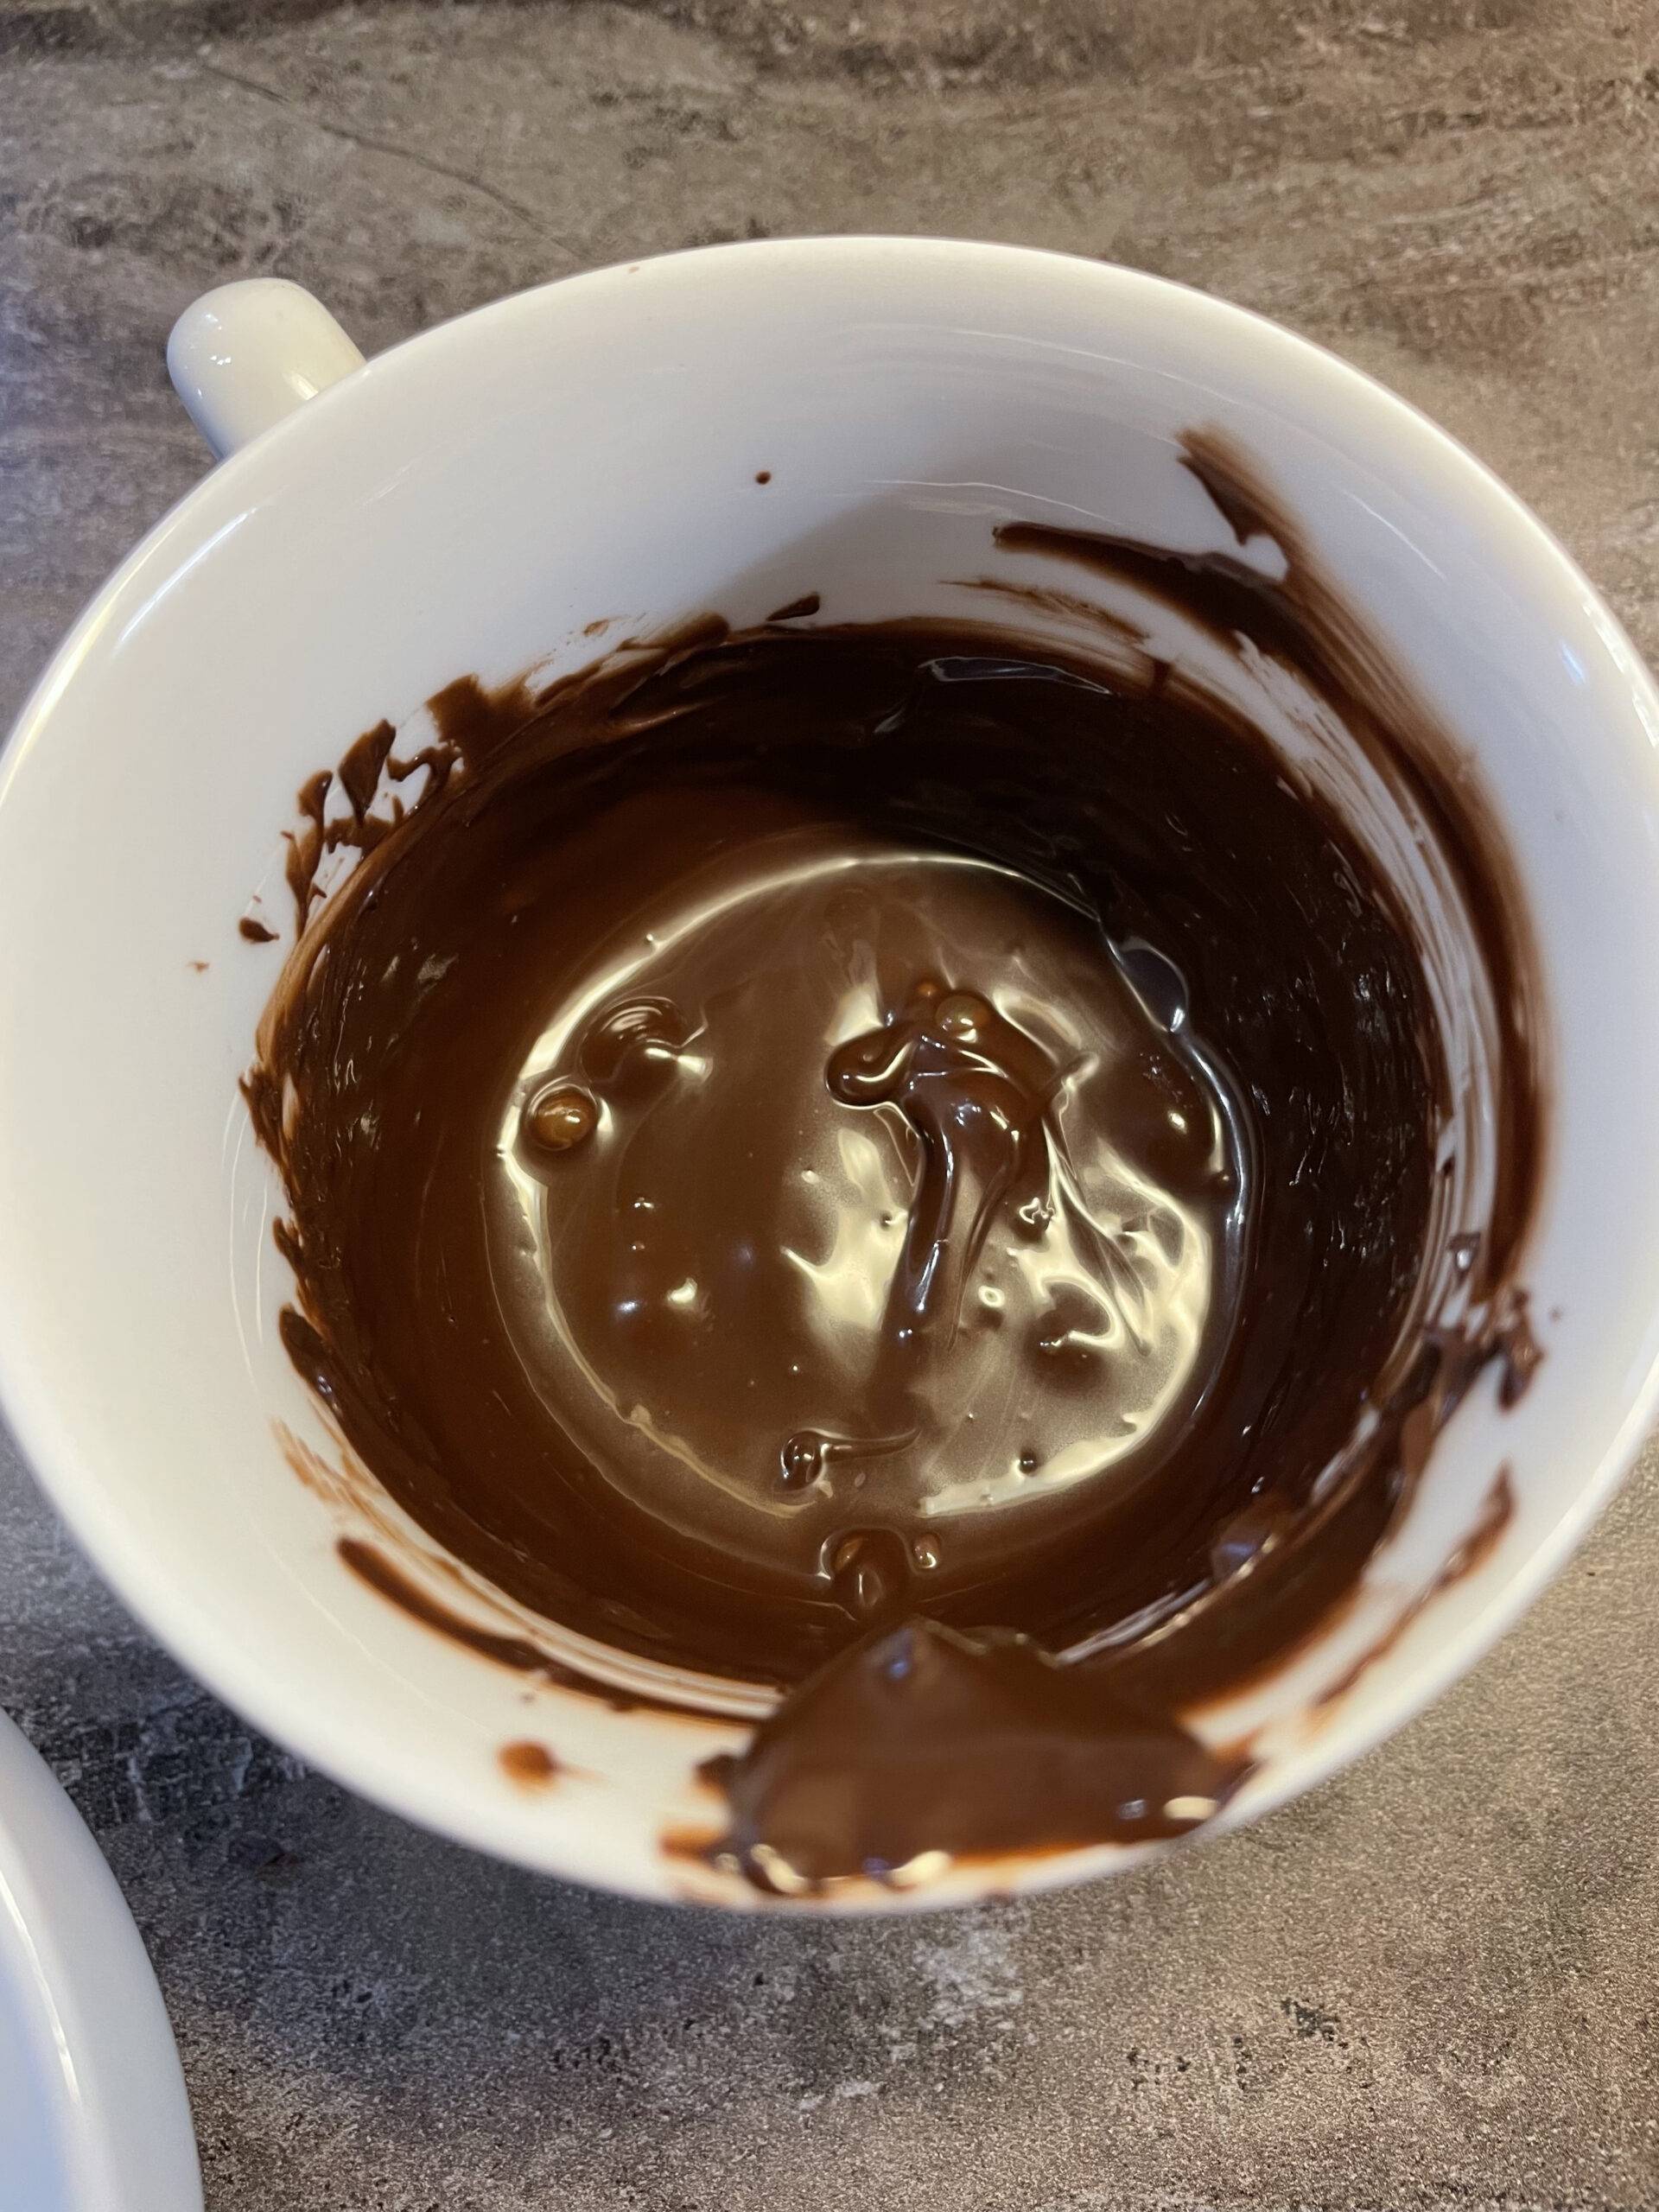 Bild zum Schritt 14 für das Bastel- und DIY-Abenteuer für Kinder: 'Schmelzt nun zwei Esslöffel Schokoladenglasur in eine Tasse im Wasserbad....'